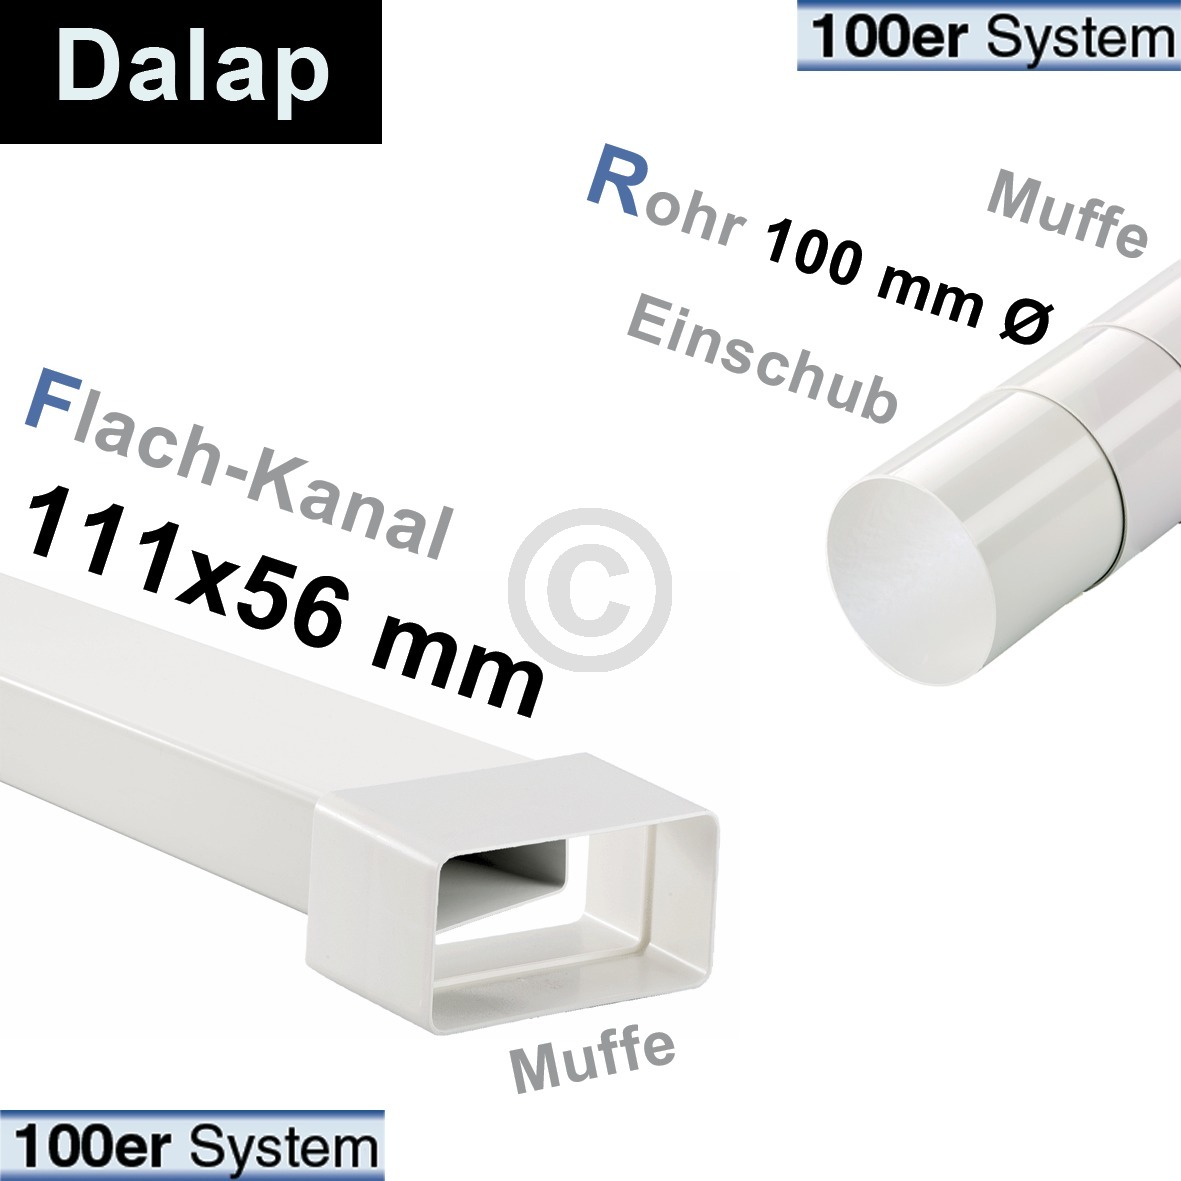 Kanalverbinder 100erF Dalap